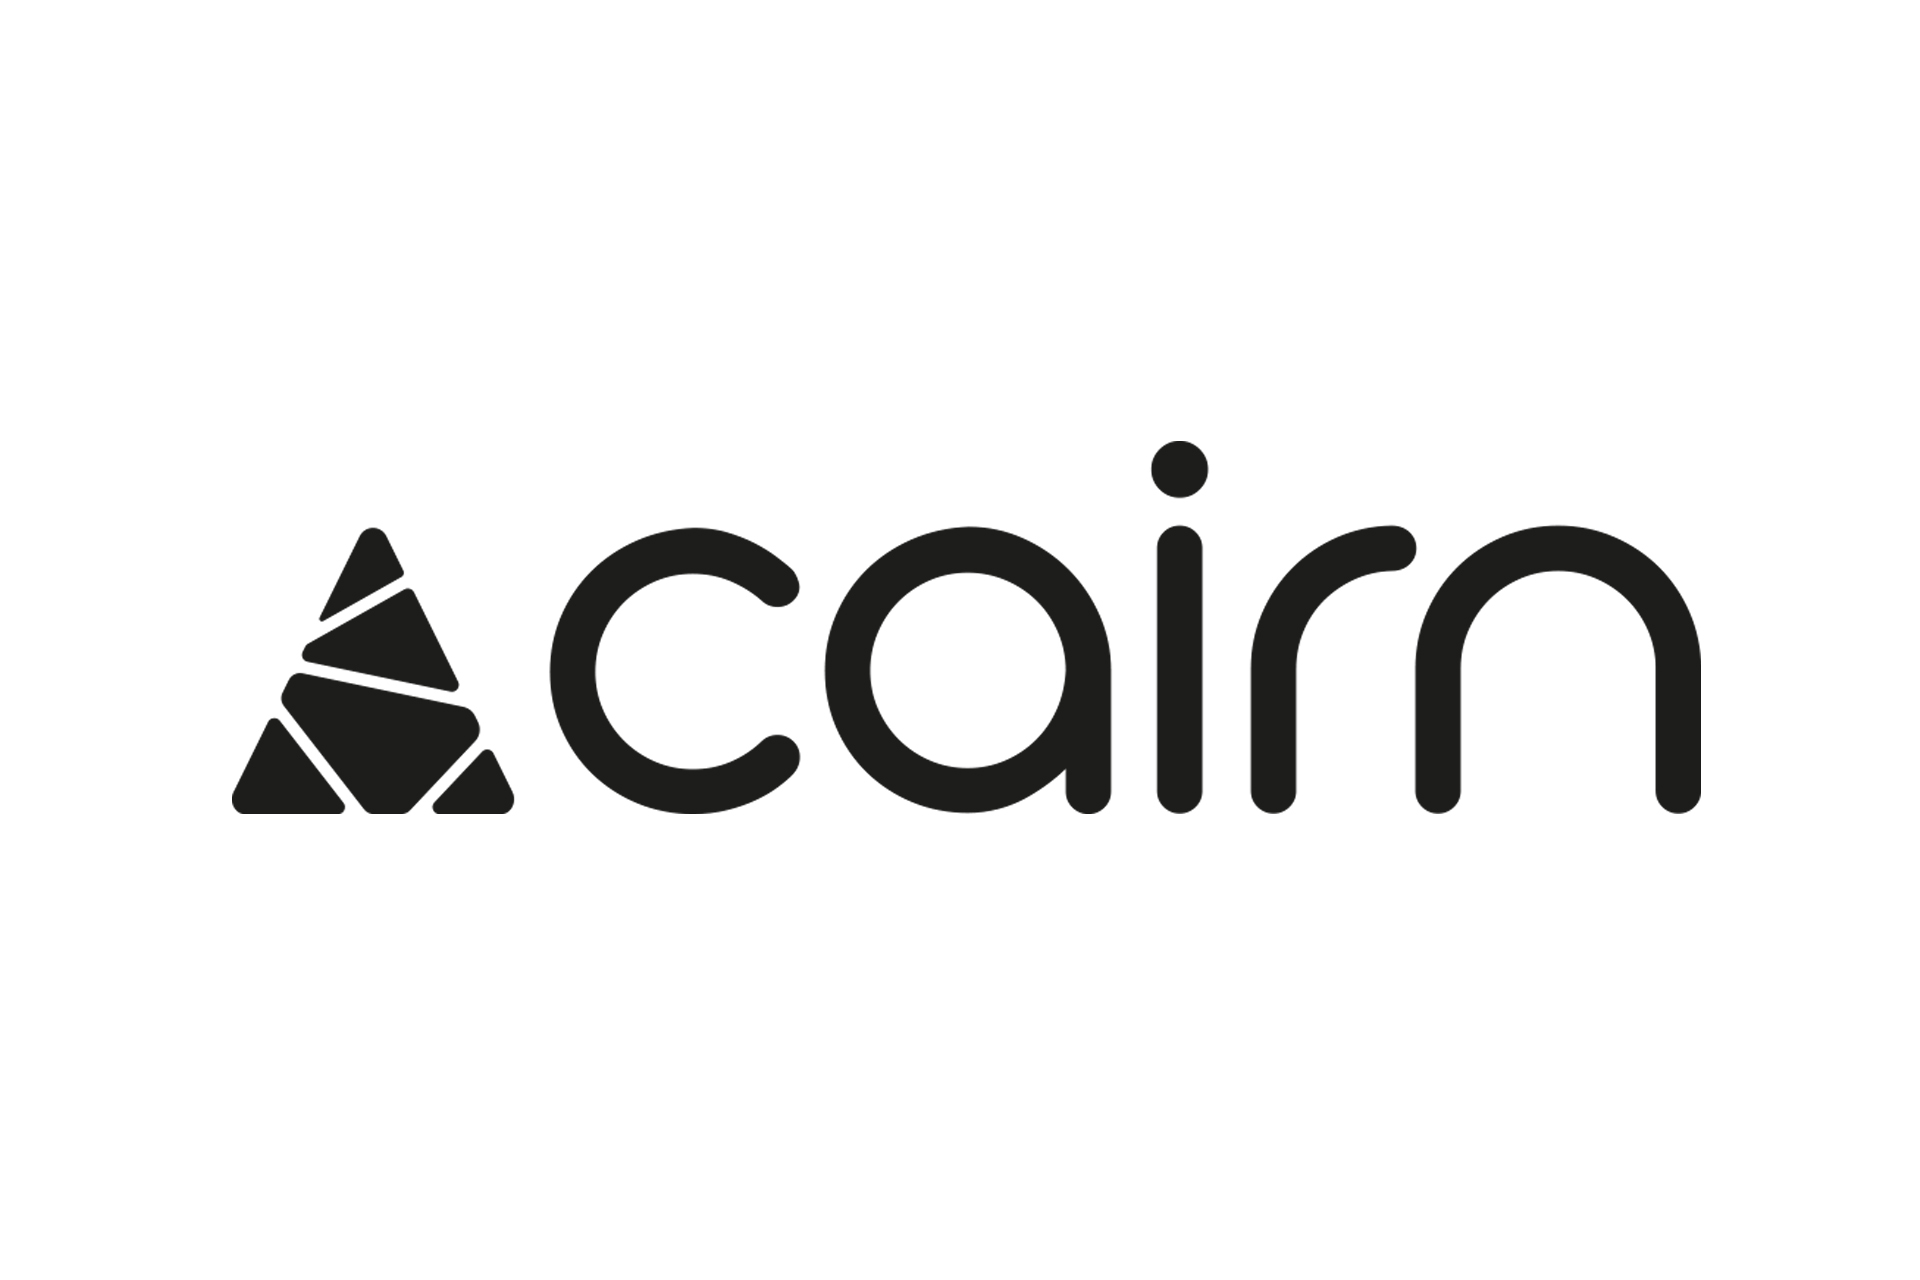 Chamrousse logo partner cairn sport equipment mountain resort grenoble isere french alps france - © Cairn